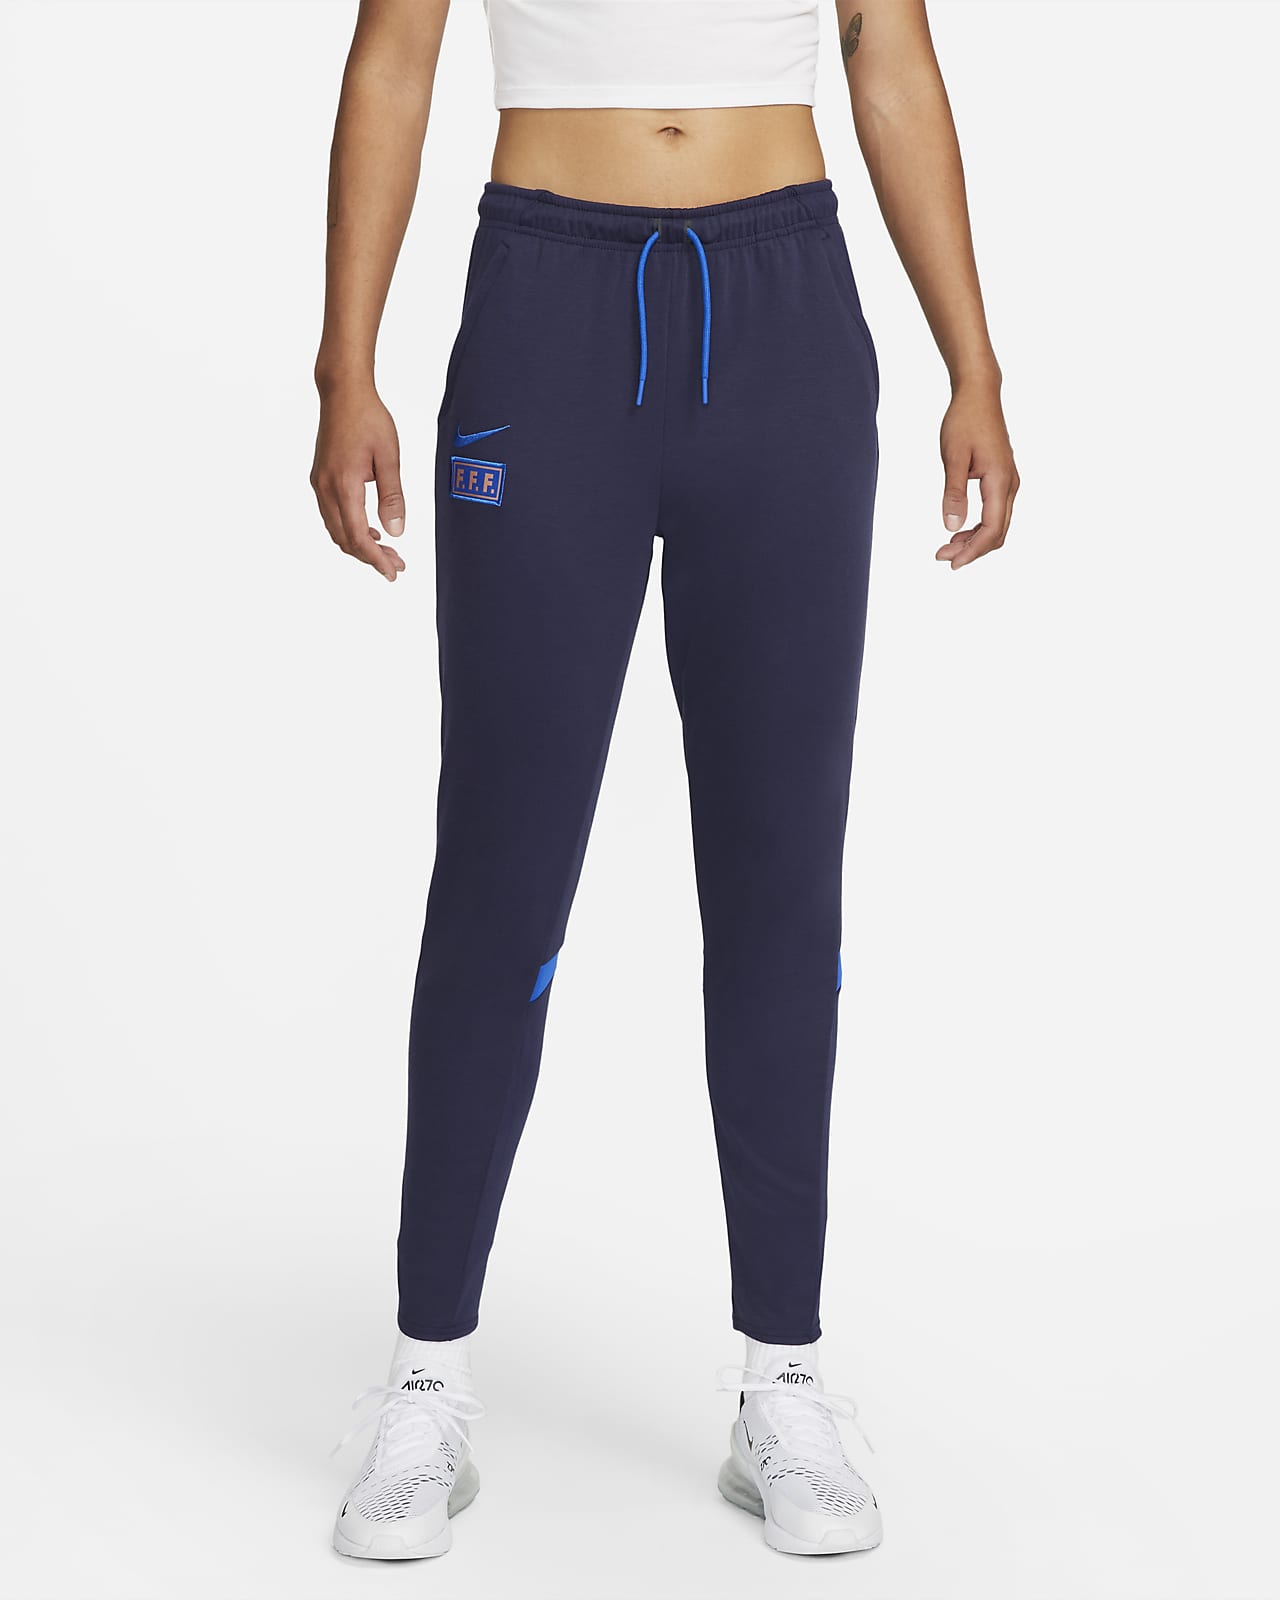 FFF Women's Nike Football Pants